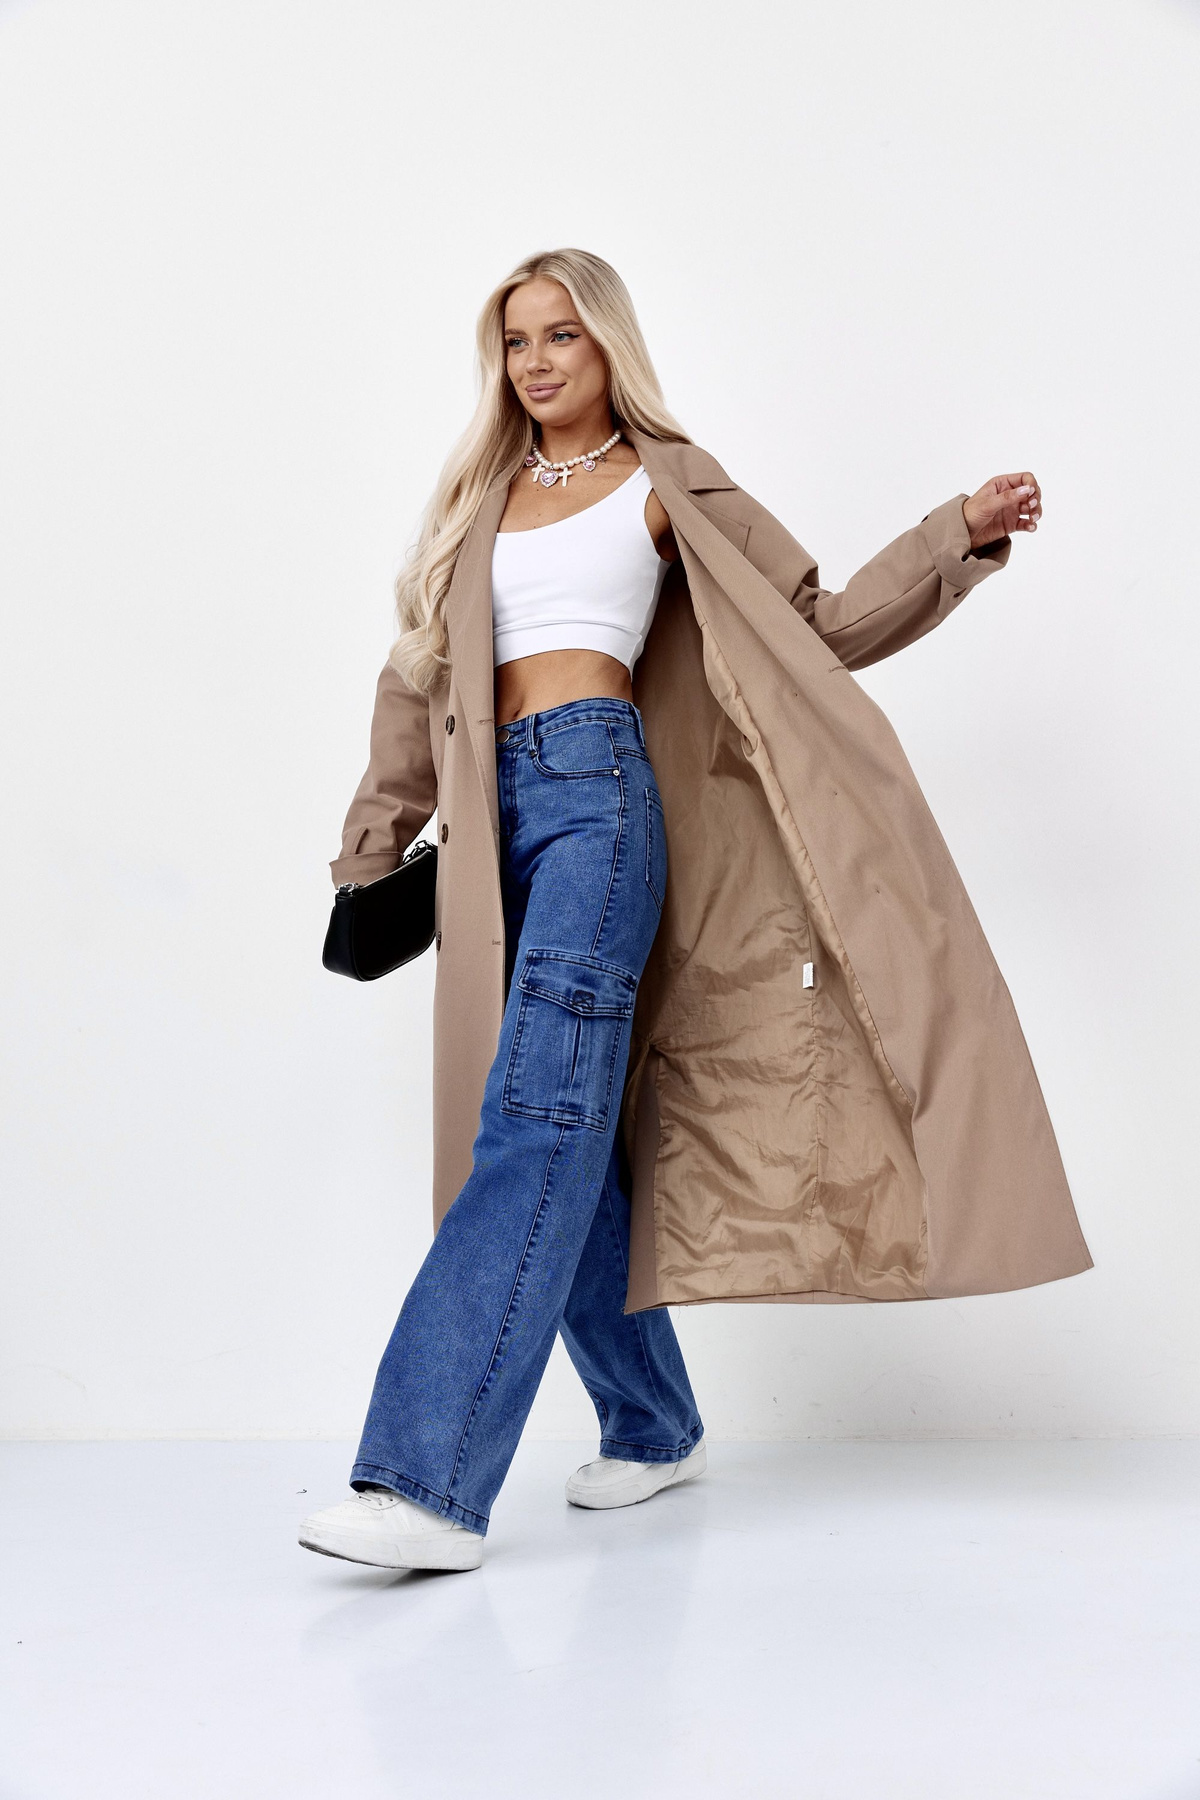 Женские джинсы карго-идеальный выбор для стильных девушек, которые хотят выглядеть модно и элегантно. Наш бренд предлагает широкий выбор размеров, чтобы каждая могла найти идеальную пару.